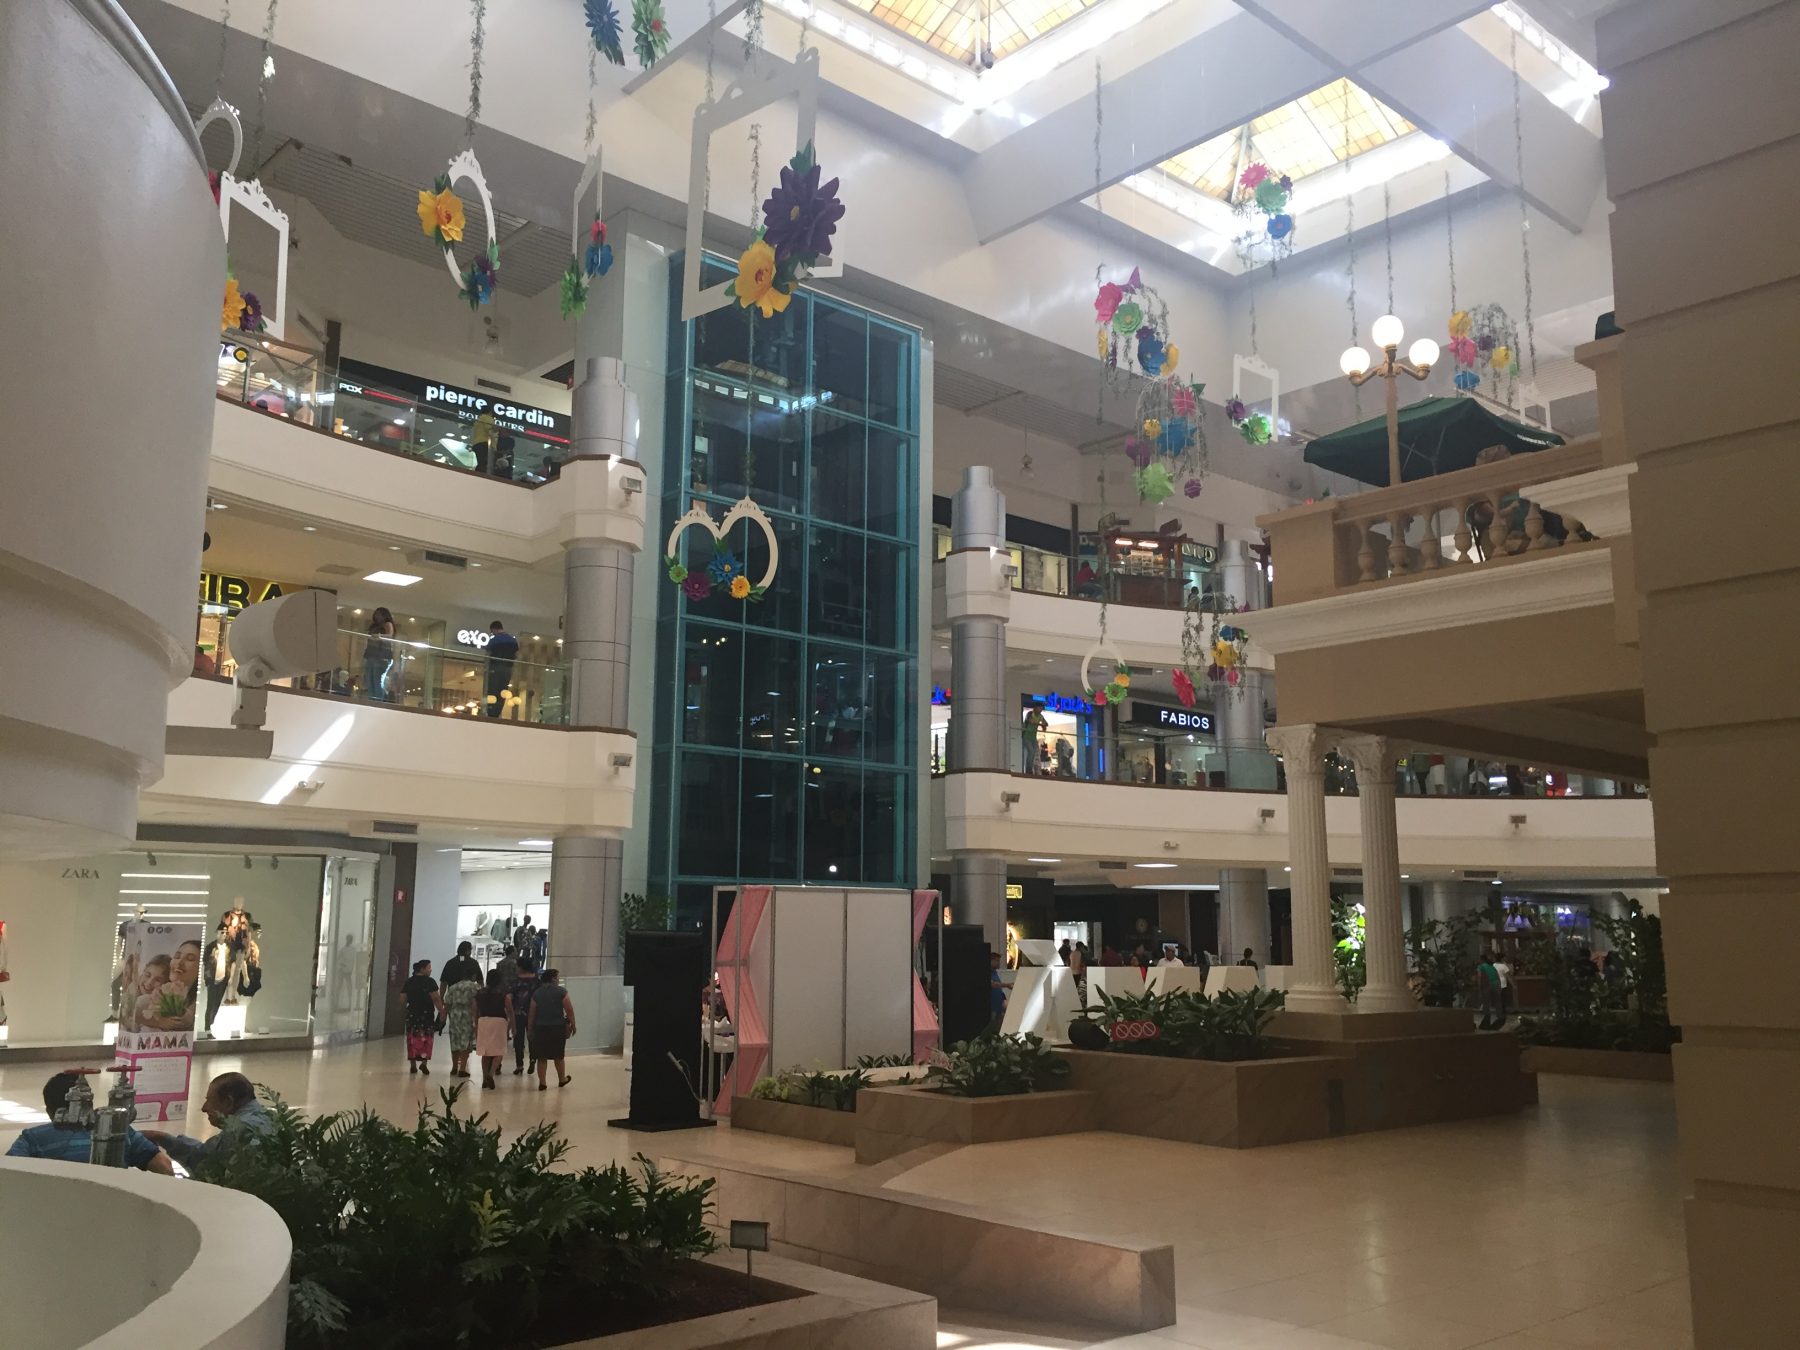 Day 74 – Hotel Villa Serena Escalon – Galerias Mall